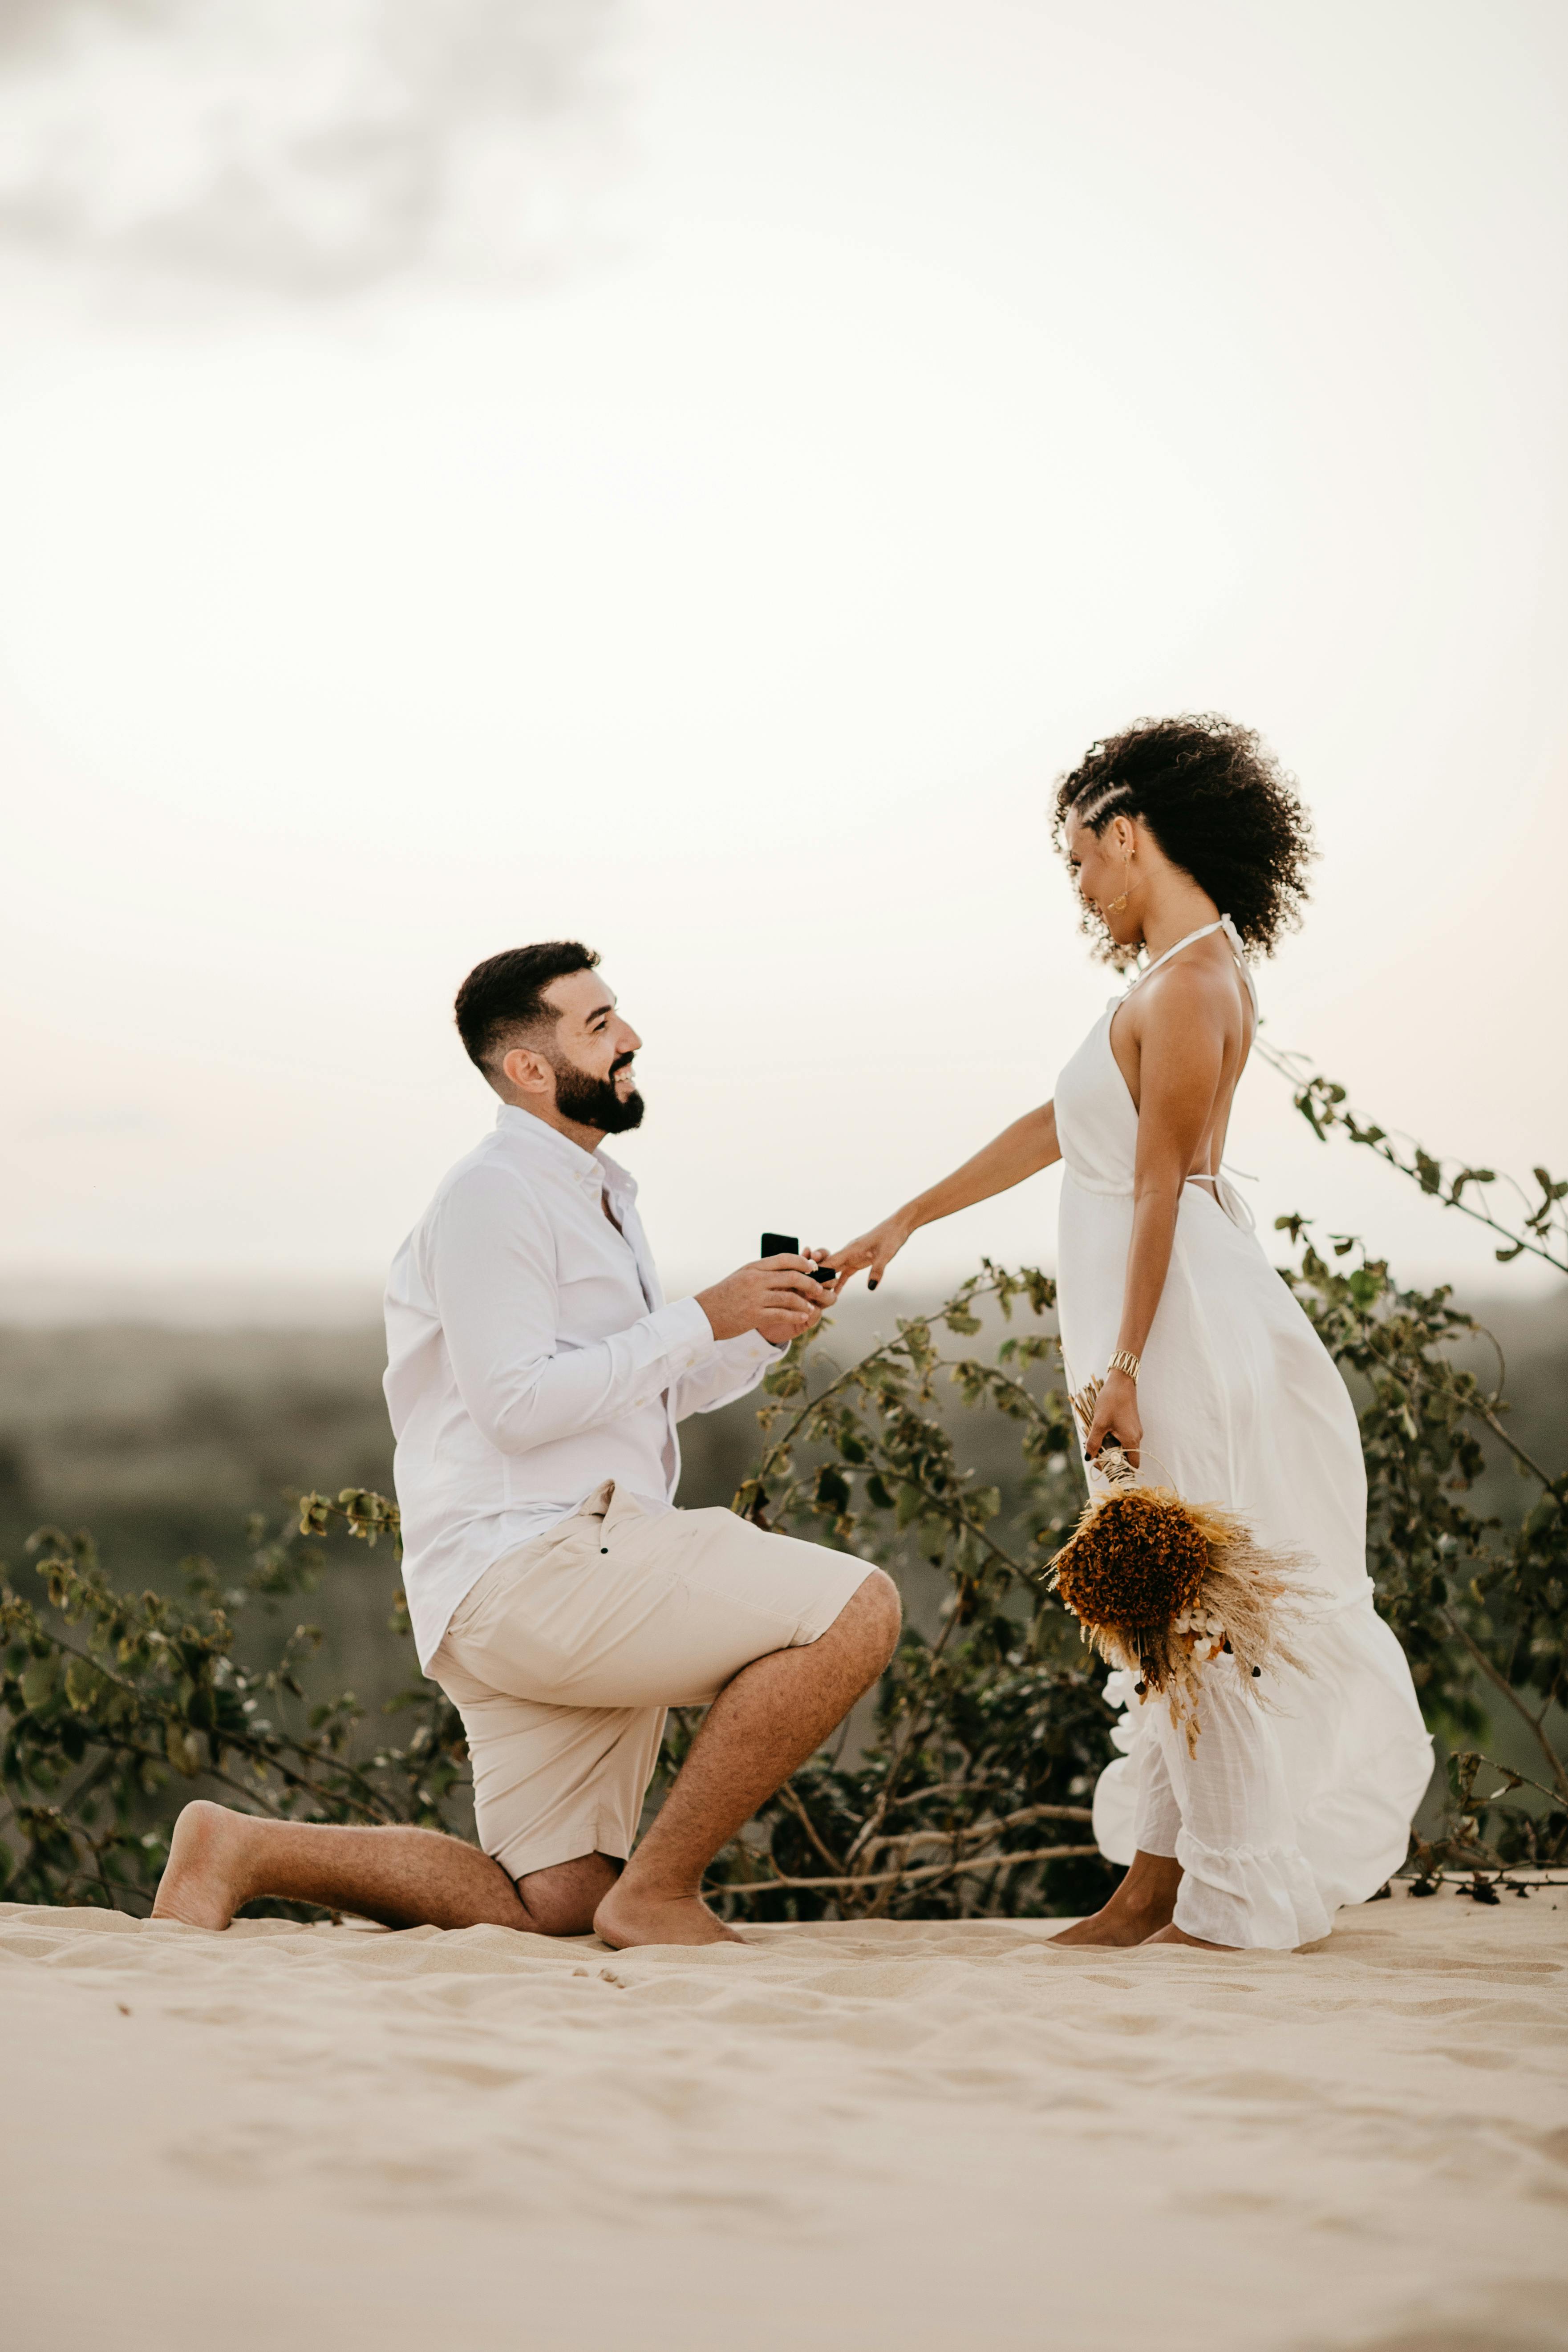 Hombre pidiéndole matrimonio a su novia en la playa | Foto: Pexels